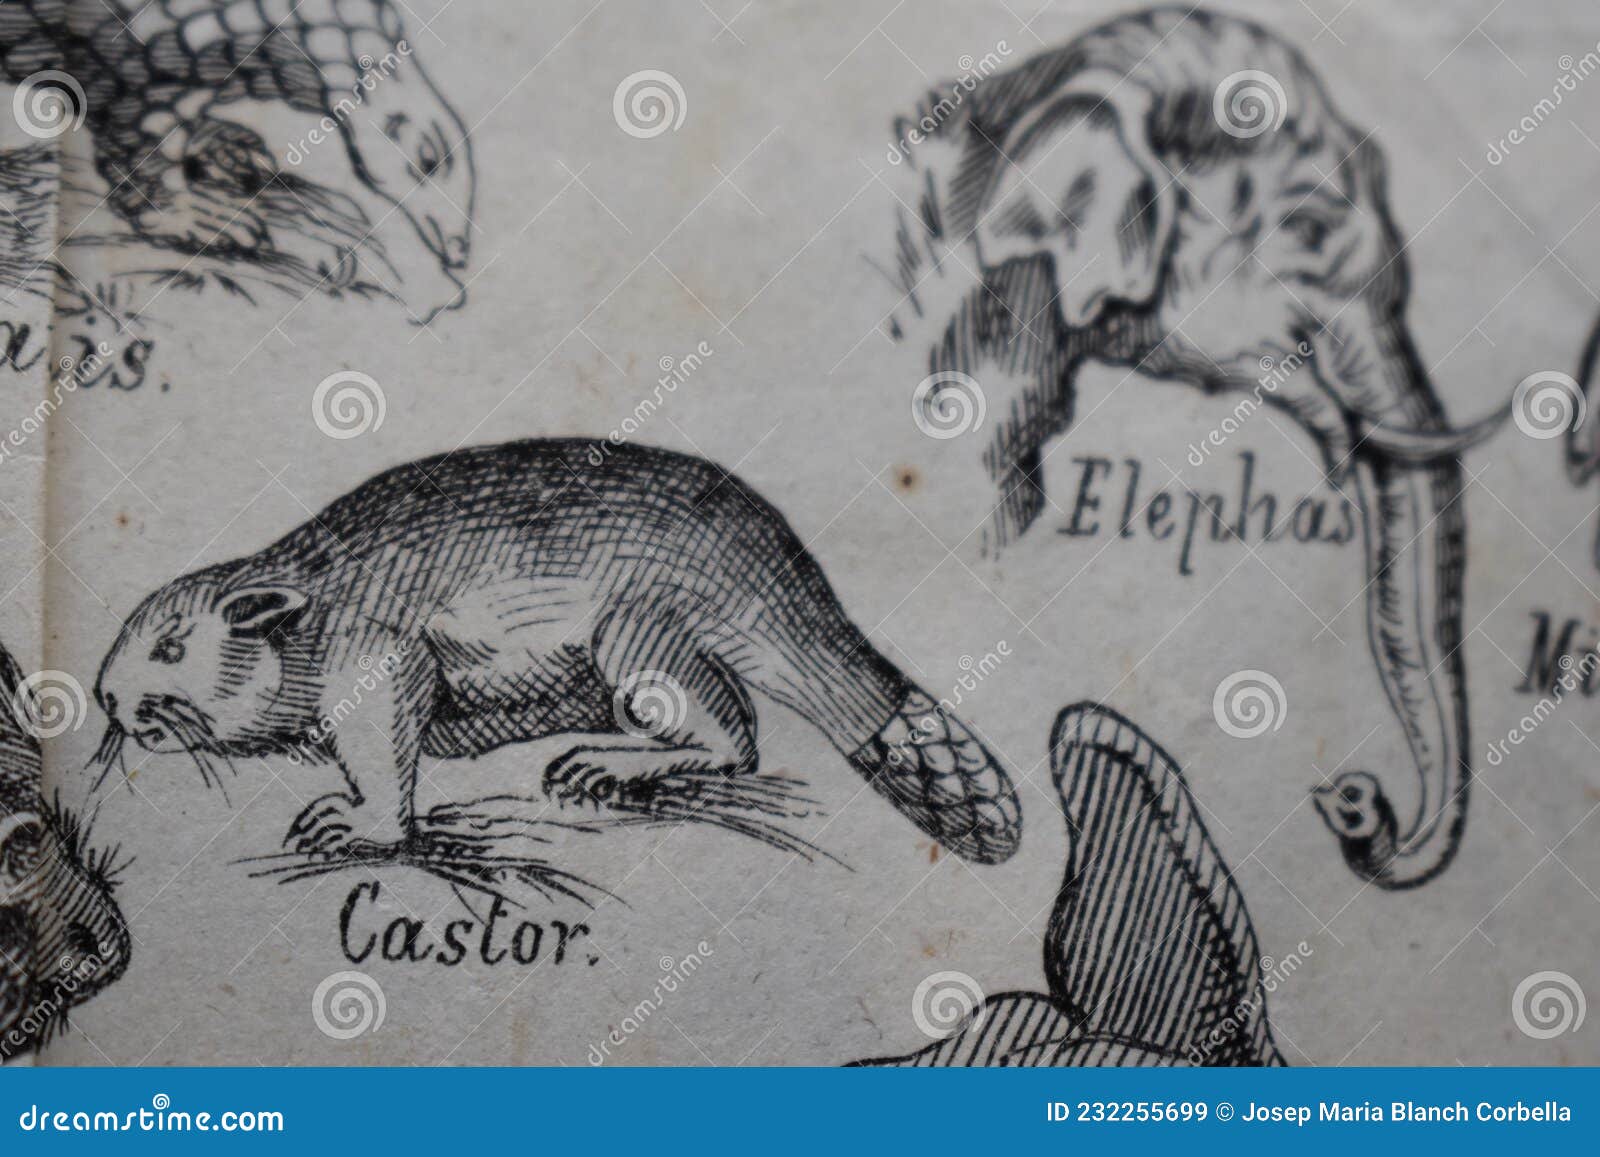 ilustracion de un castor y de varios animales.